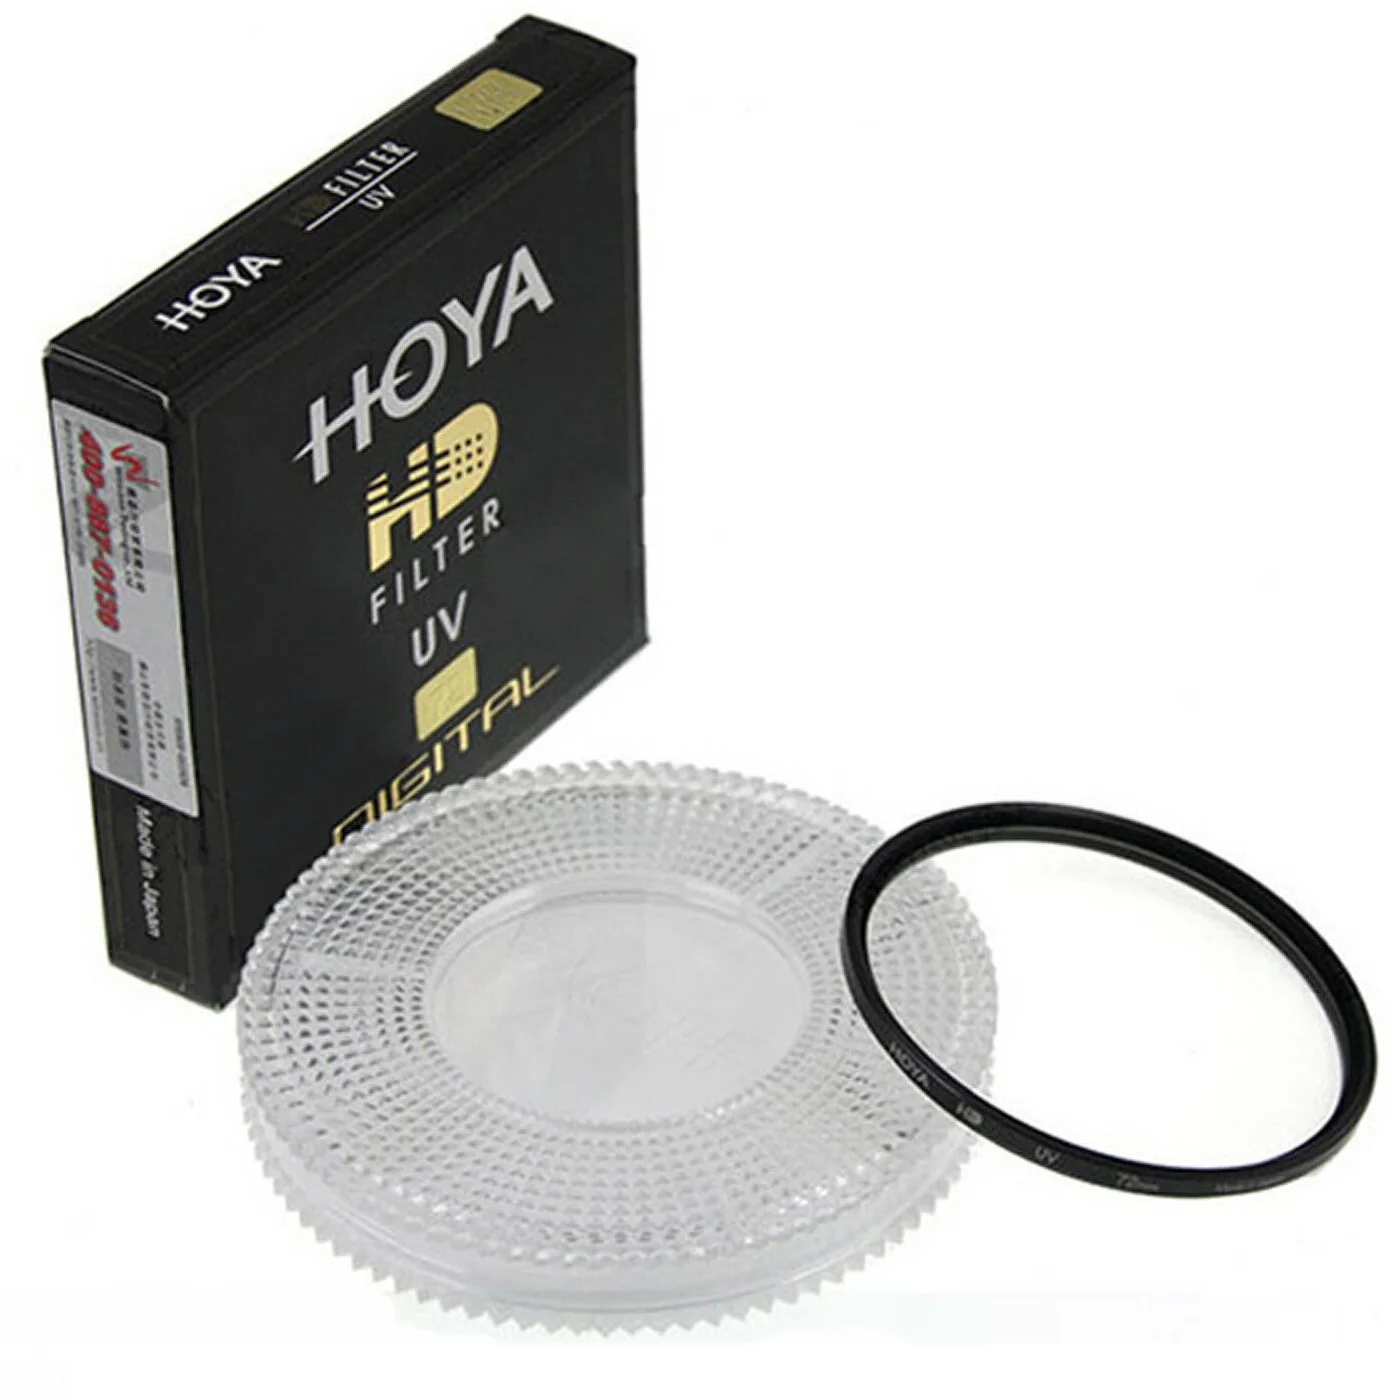 Hoya 55mm hd digital uv filtro de